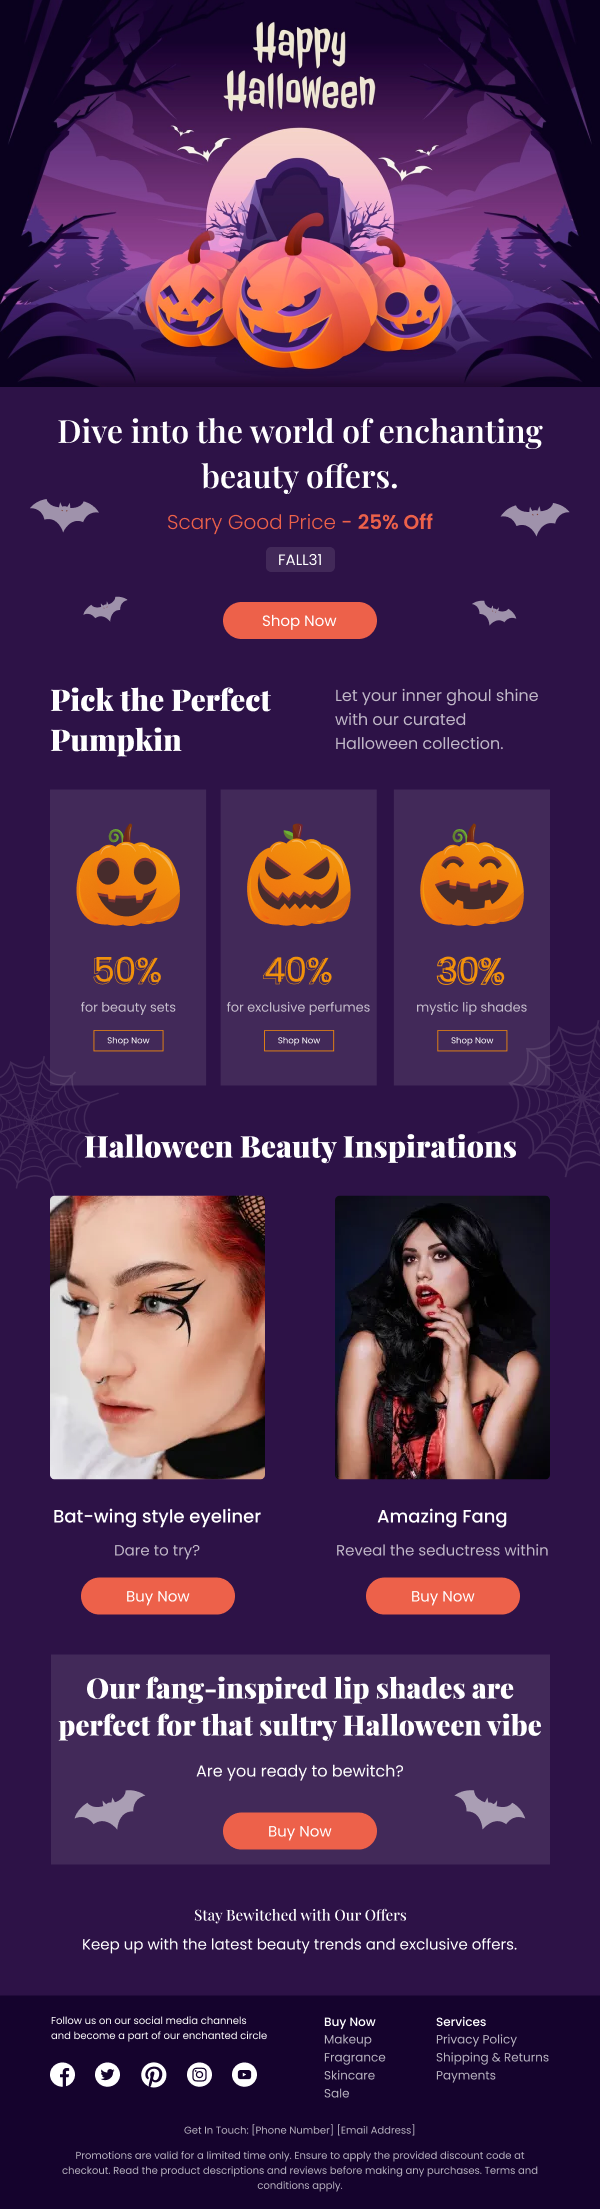 Beauty-Halloween Makeup Offers